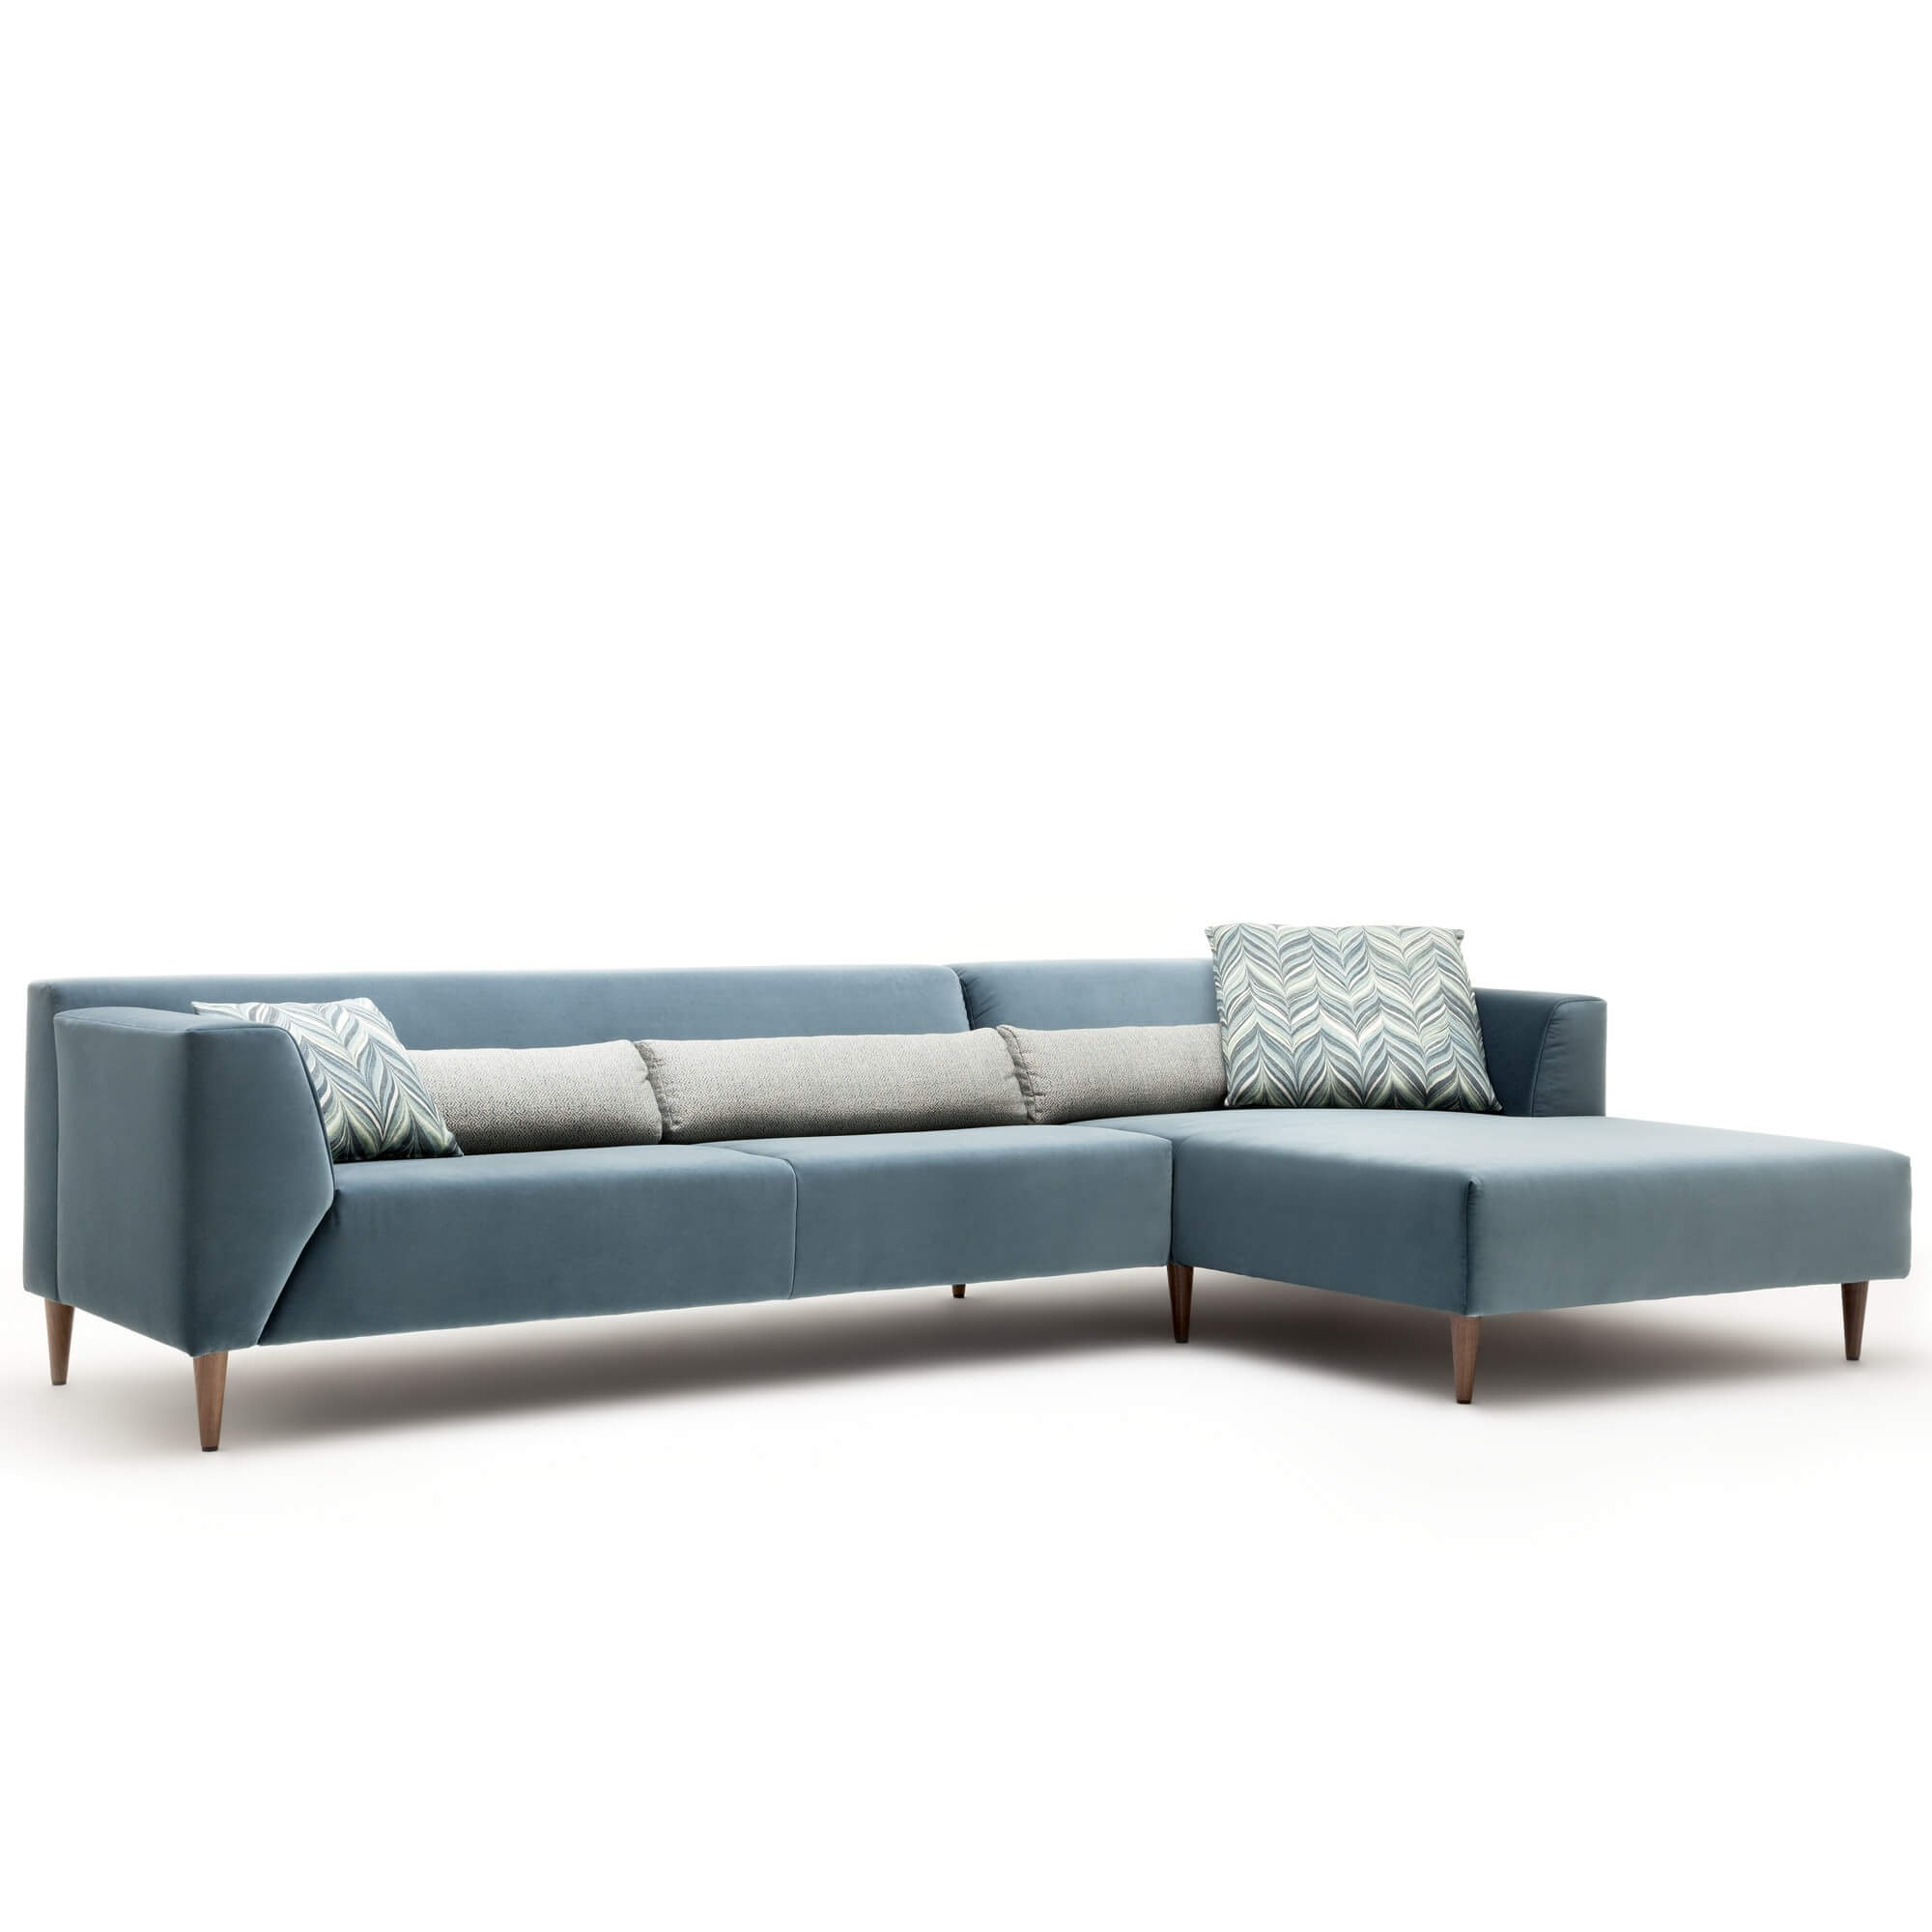 Элитный диван в стиле минимализм Rolf Benz Linea из Германии